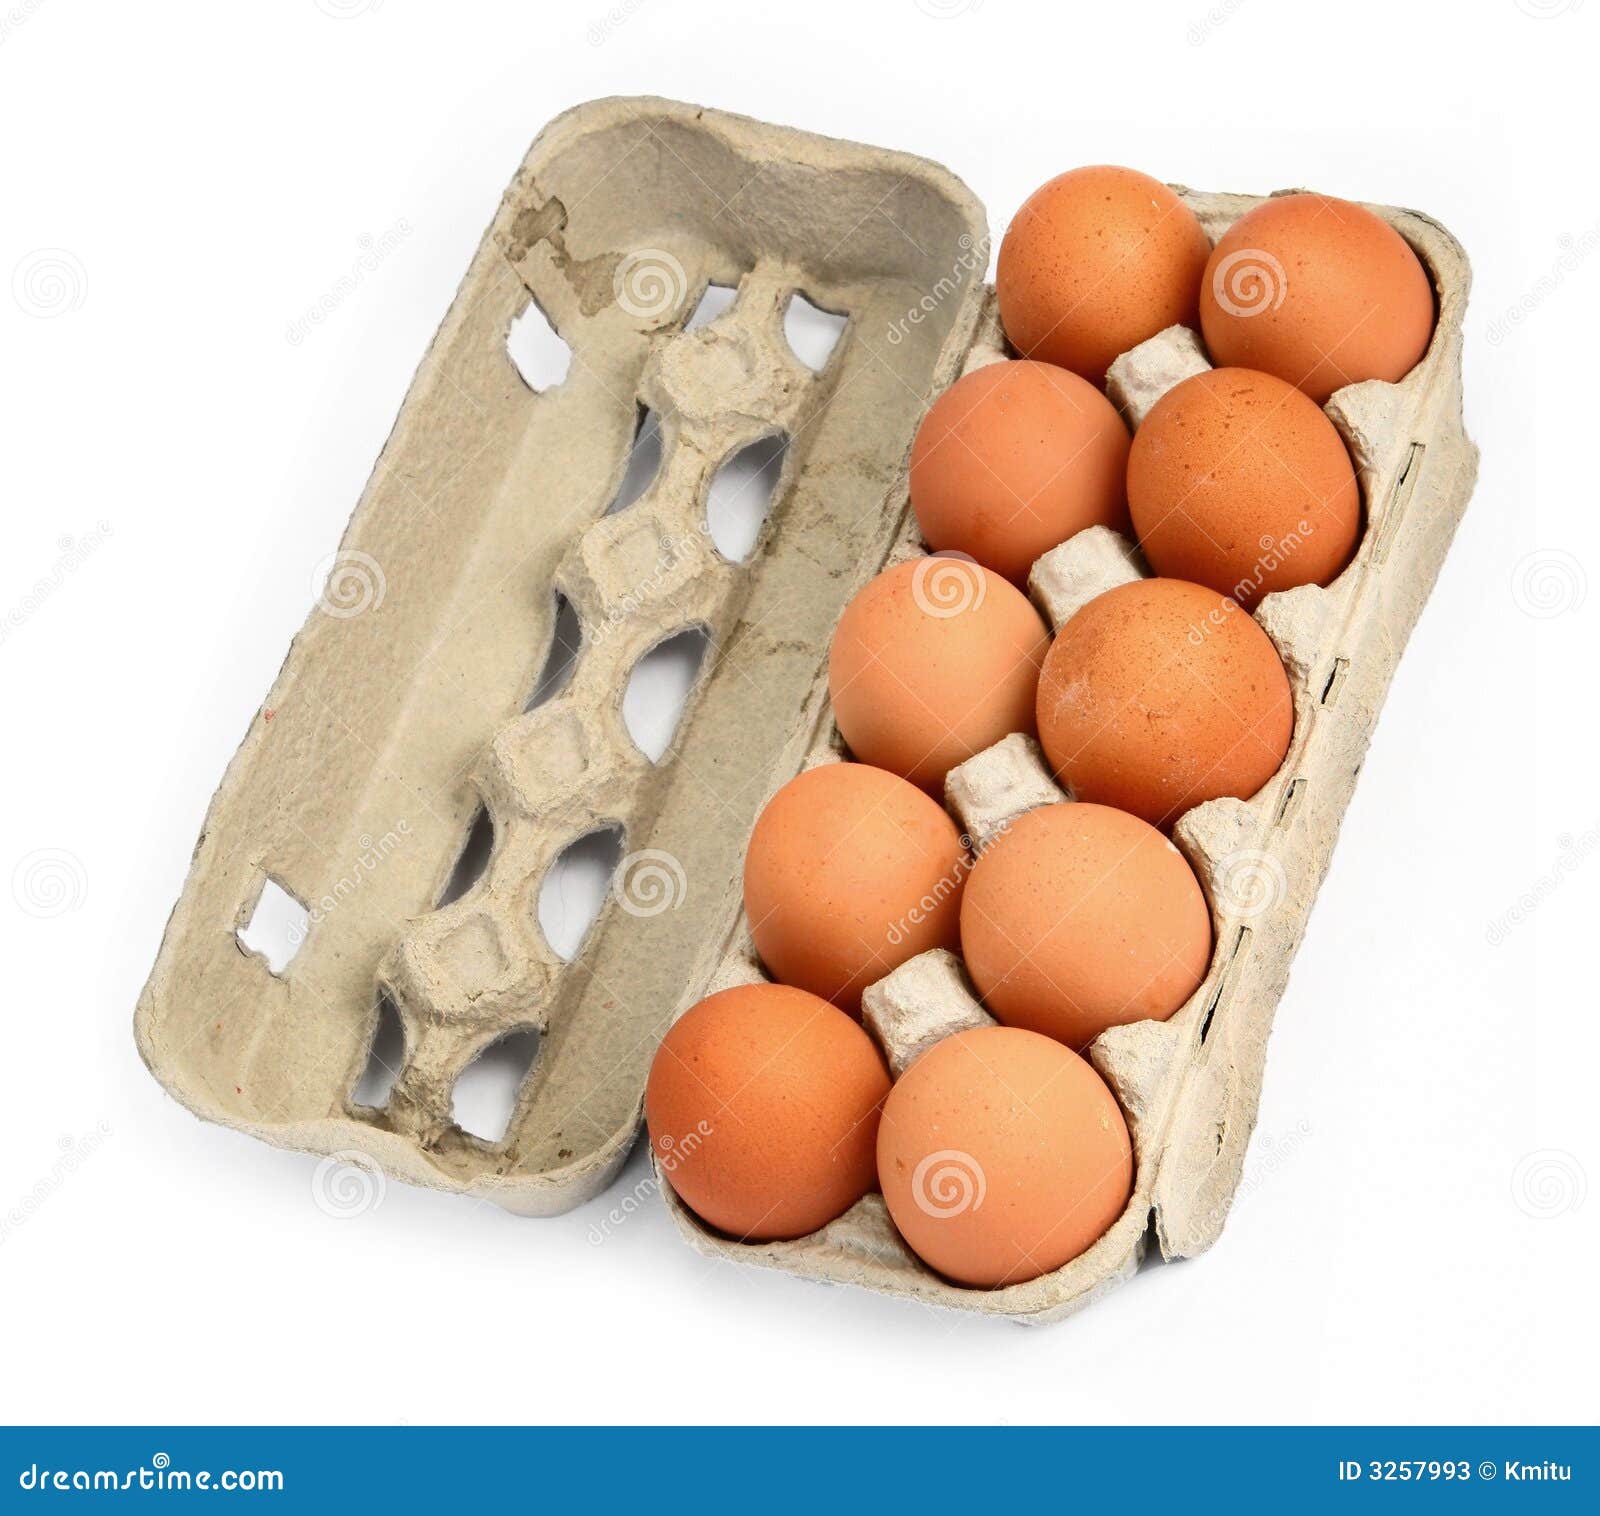 Ten Eggs In A Box #2 Stock Photos - Image: 3257993